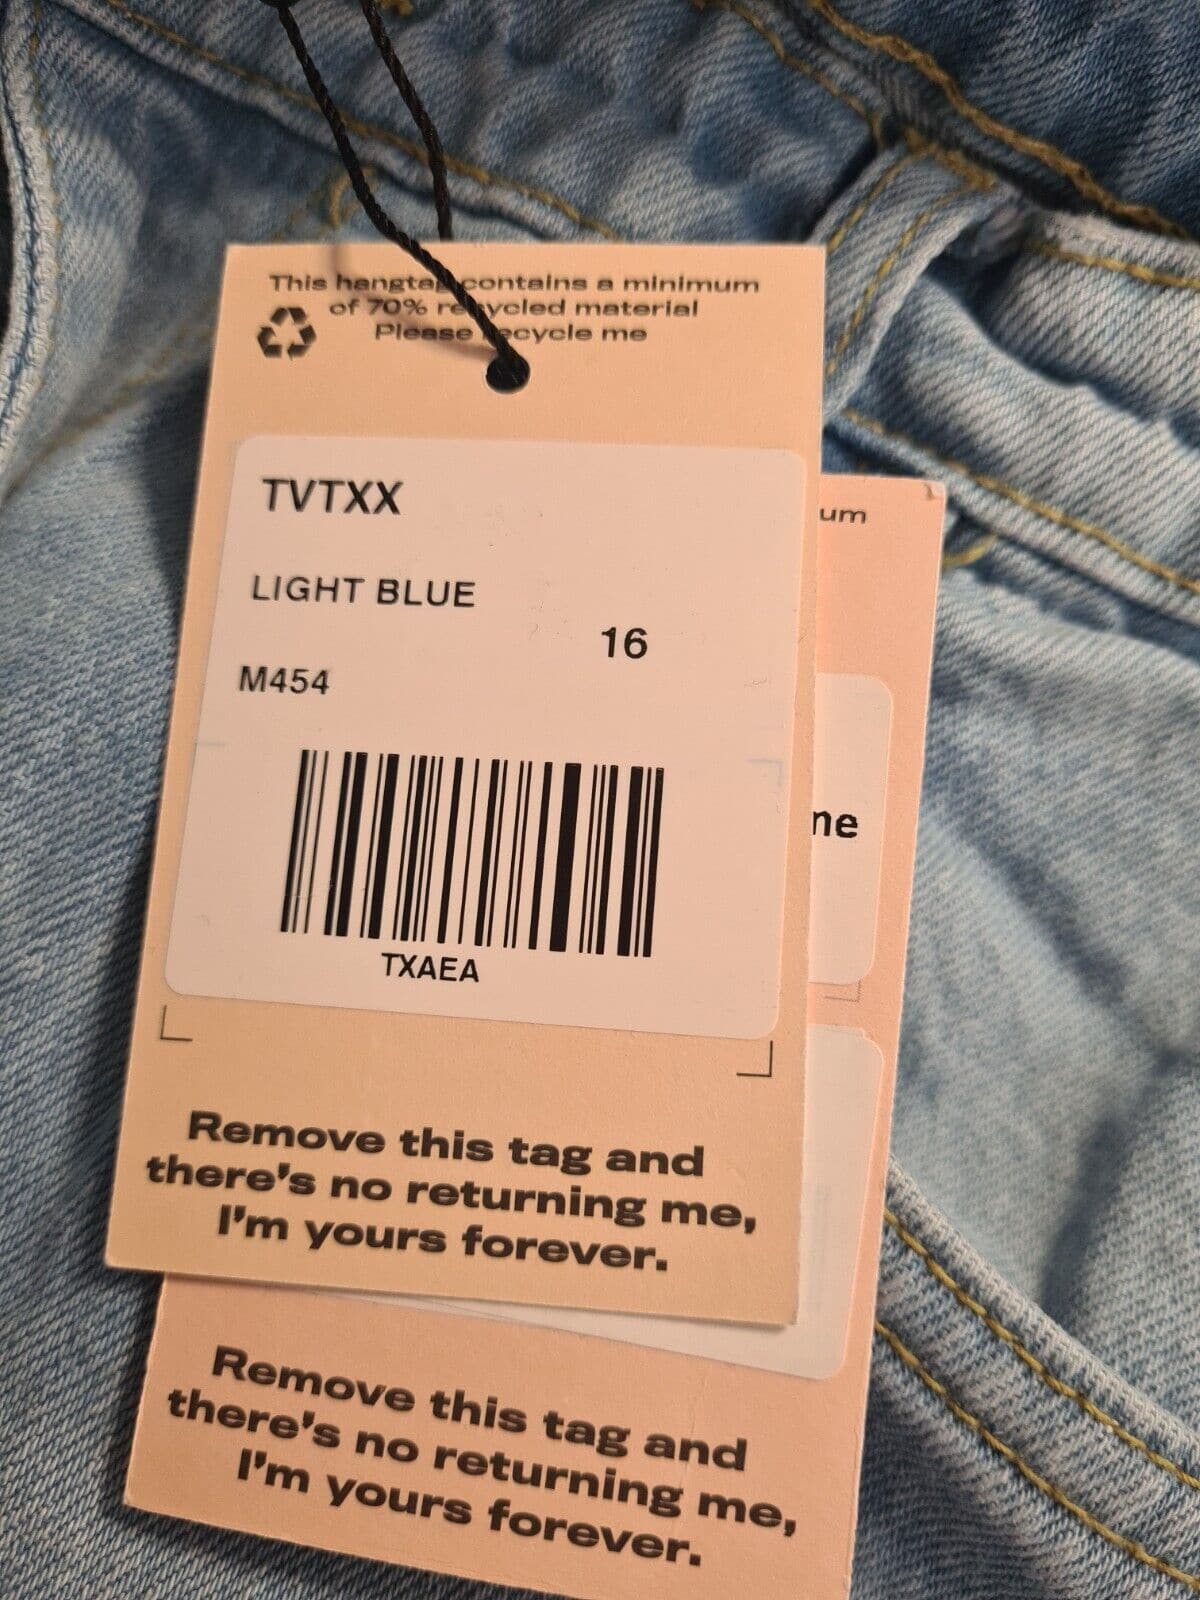 Missguided Bleach Straight Leg Jeans - Light Blue. UK 16 **** Ref V51